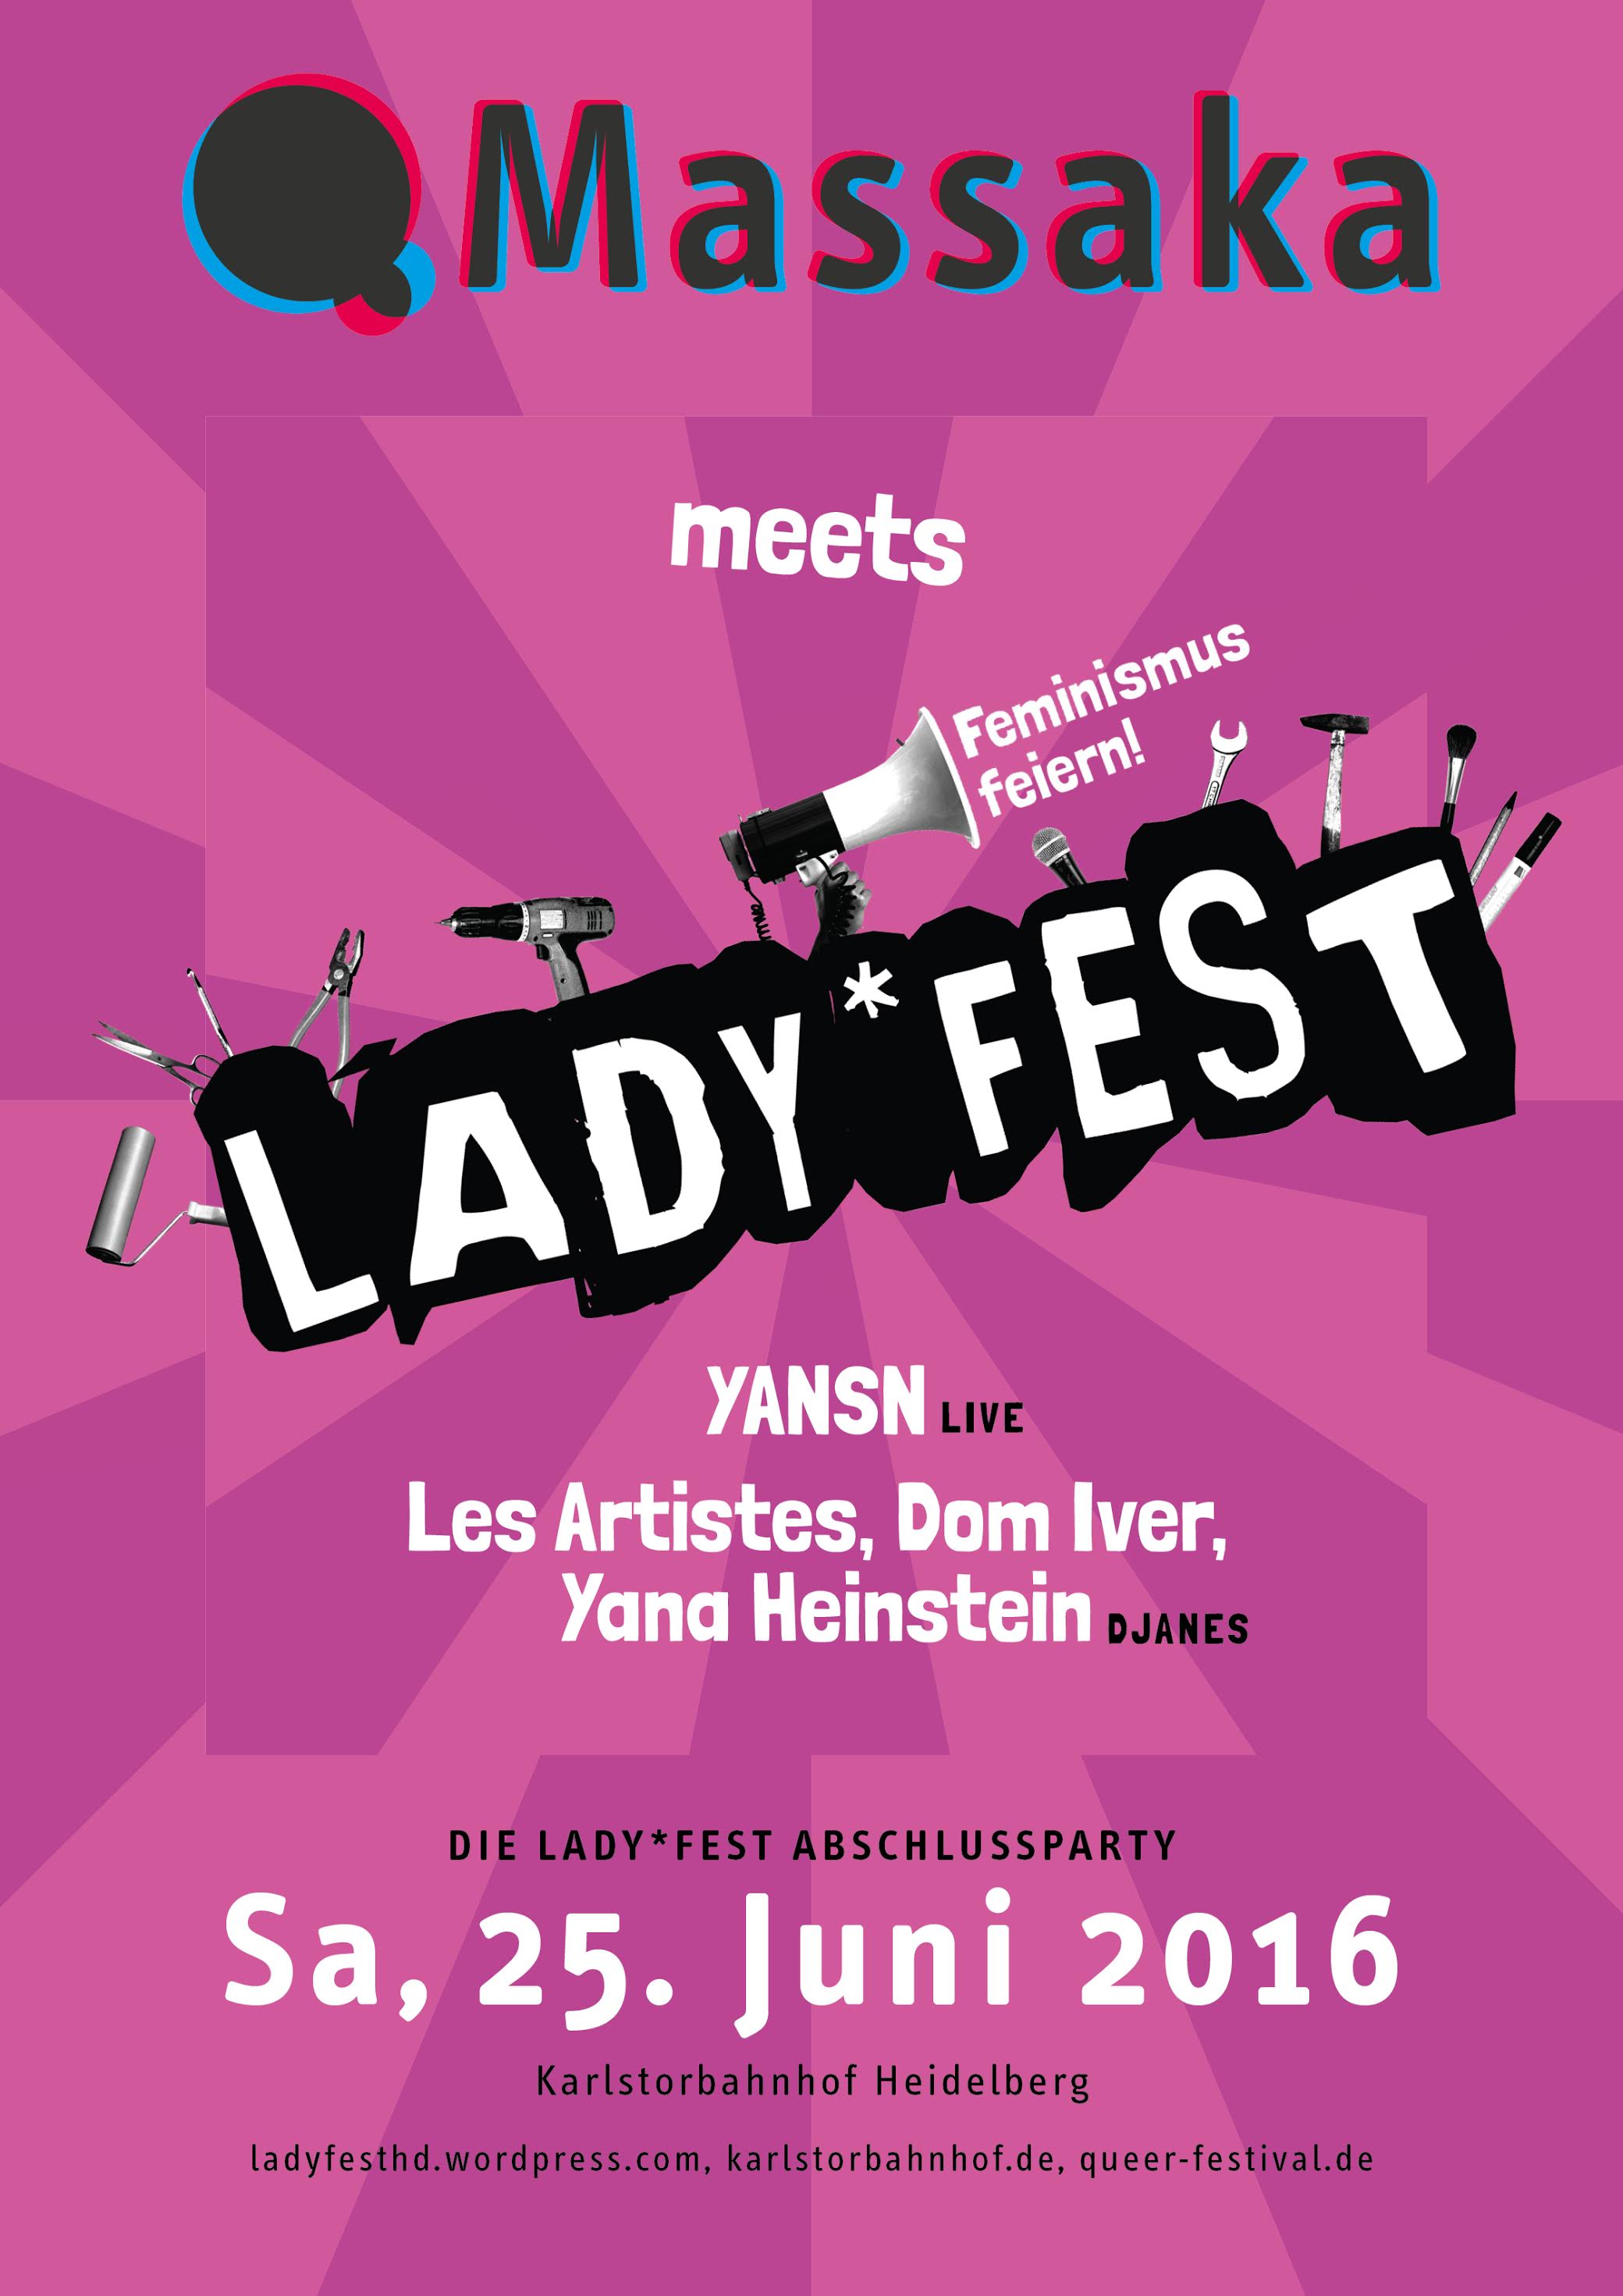 Ladyfest heidelberg